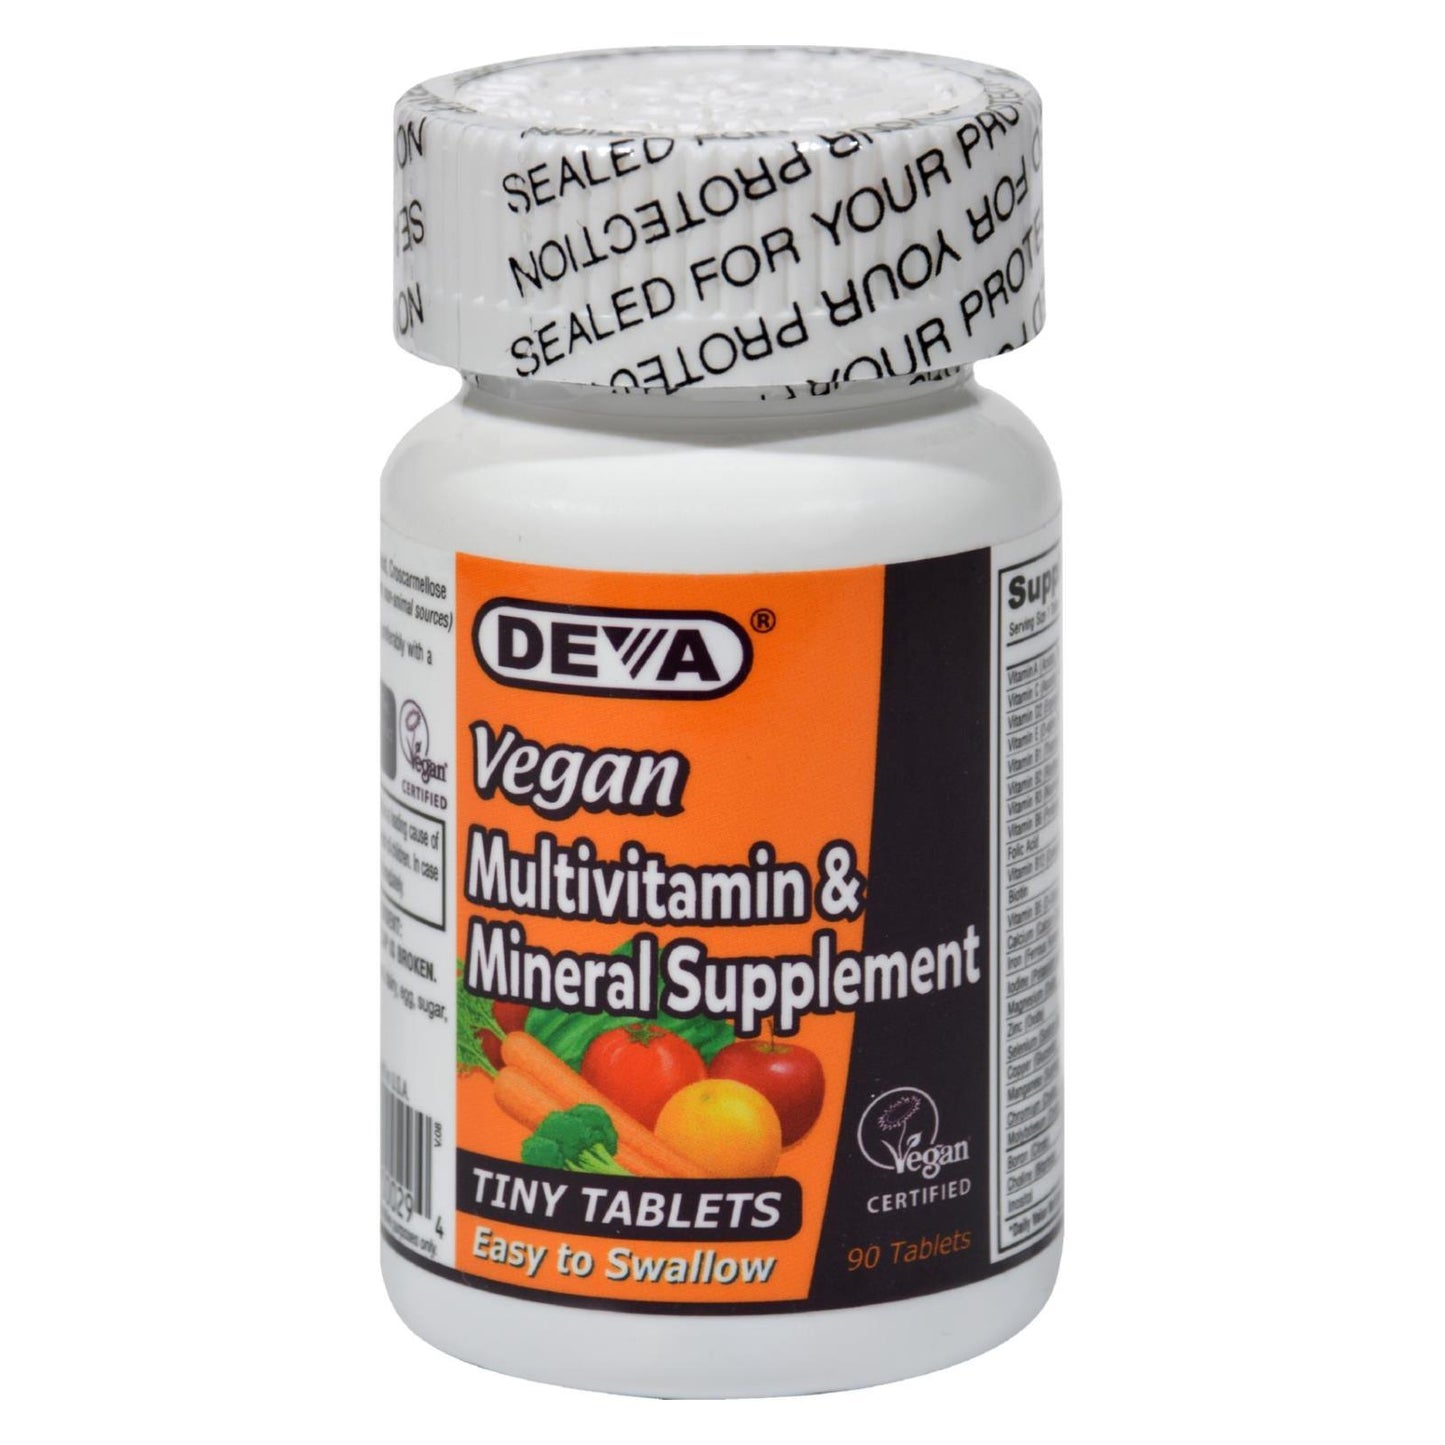 Deva Vegan Vitamins - Multivitamin And Mineral Supplement - 90 Tiny Tablets